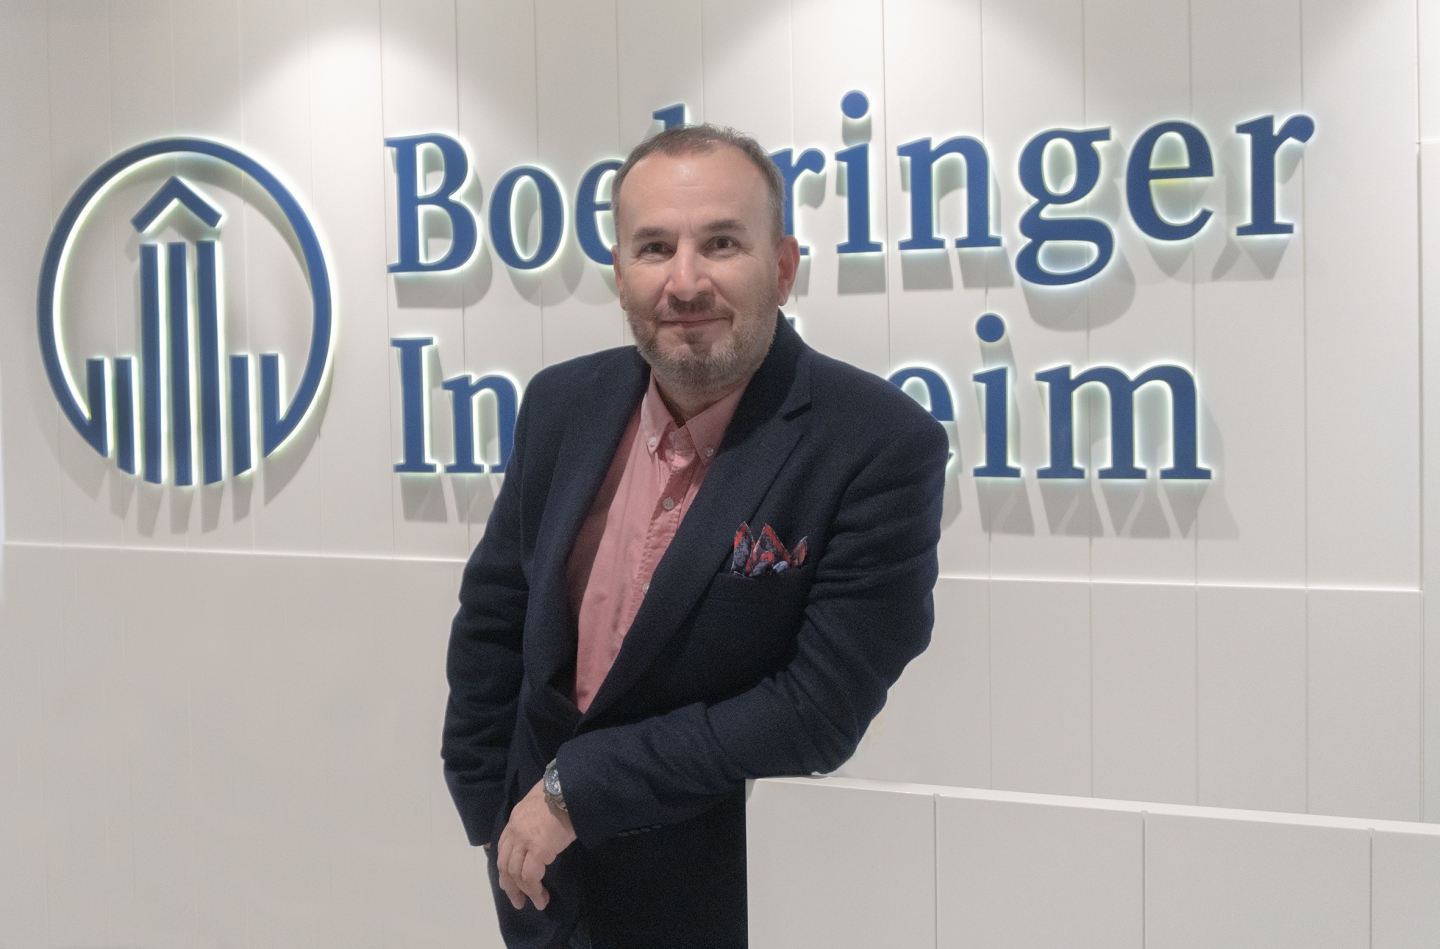 Boehringer Ingelheim Türkiye Hayvan Sağlığı Kanatlı İş Birim Müdürü Veteriner Hekim Bülent Çakan: